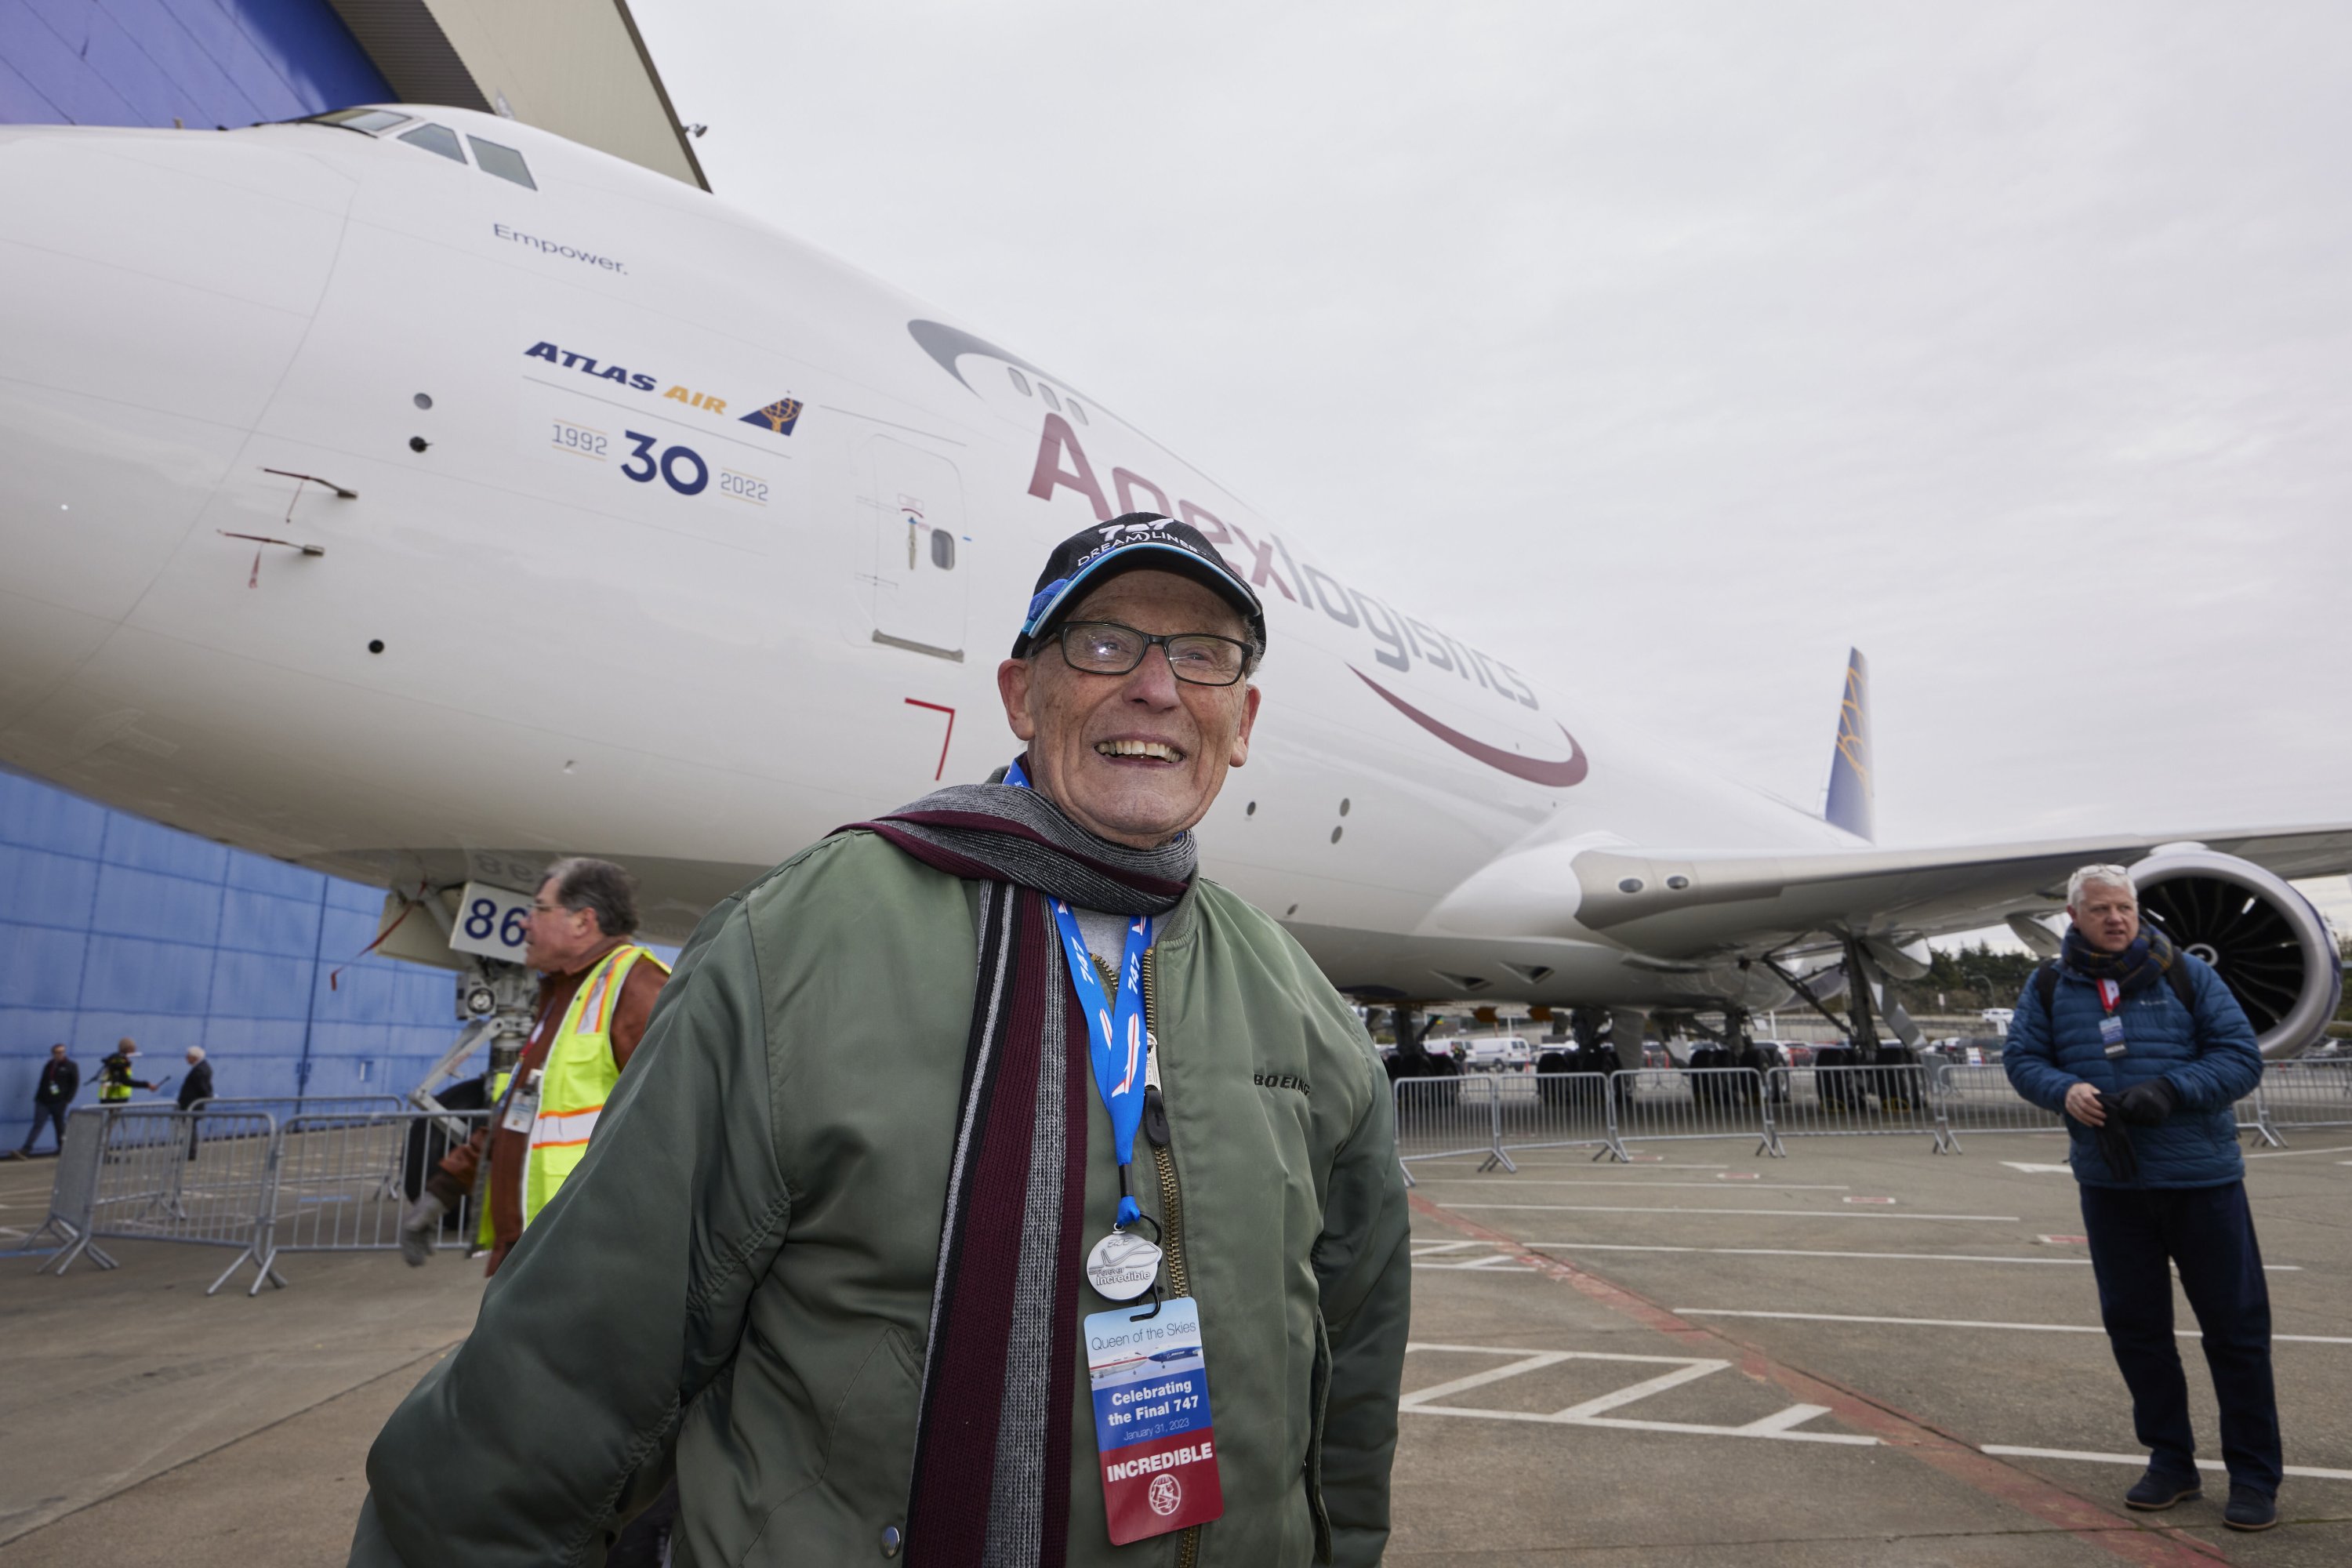 Desi Evans, 92, tertawa ketika berbicara tentang bekerja pada 747 pertama lebih dari 50 tahun yang lalu sebelum upacara pengiriman jumbo jet Boeing 747 terakhir, di Everett, Washington, AS, 31 Januari 2023. (AP Photo )